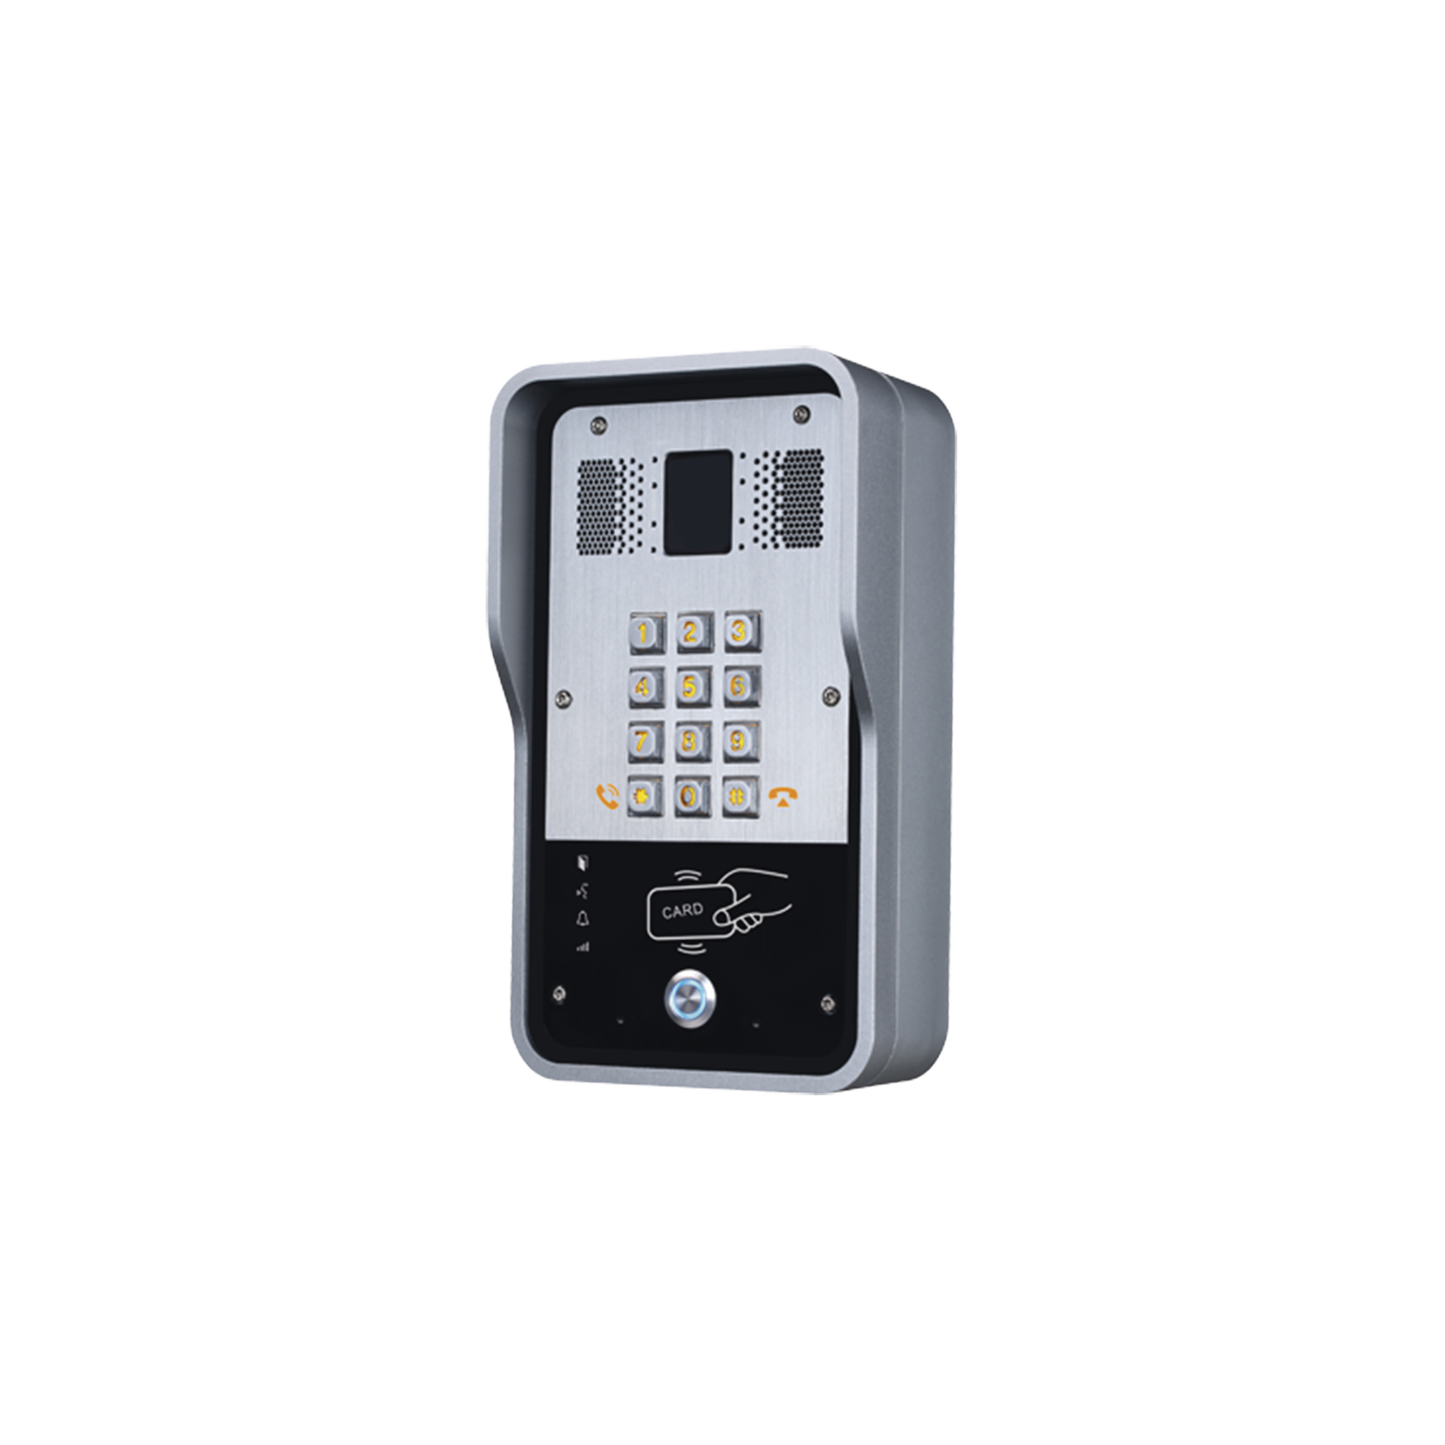 Audio Portero IP  2 líneas SIP con relevador integrado, Lector RFID para acceso por clave numérica, tarjeta o llamada remota, PoE